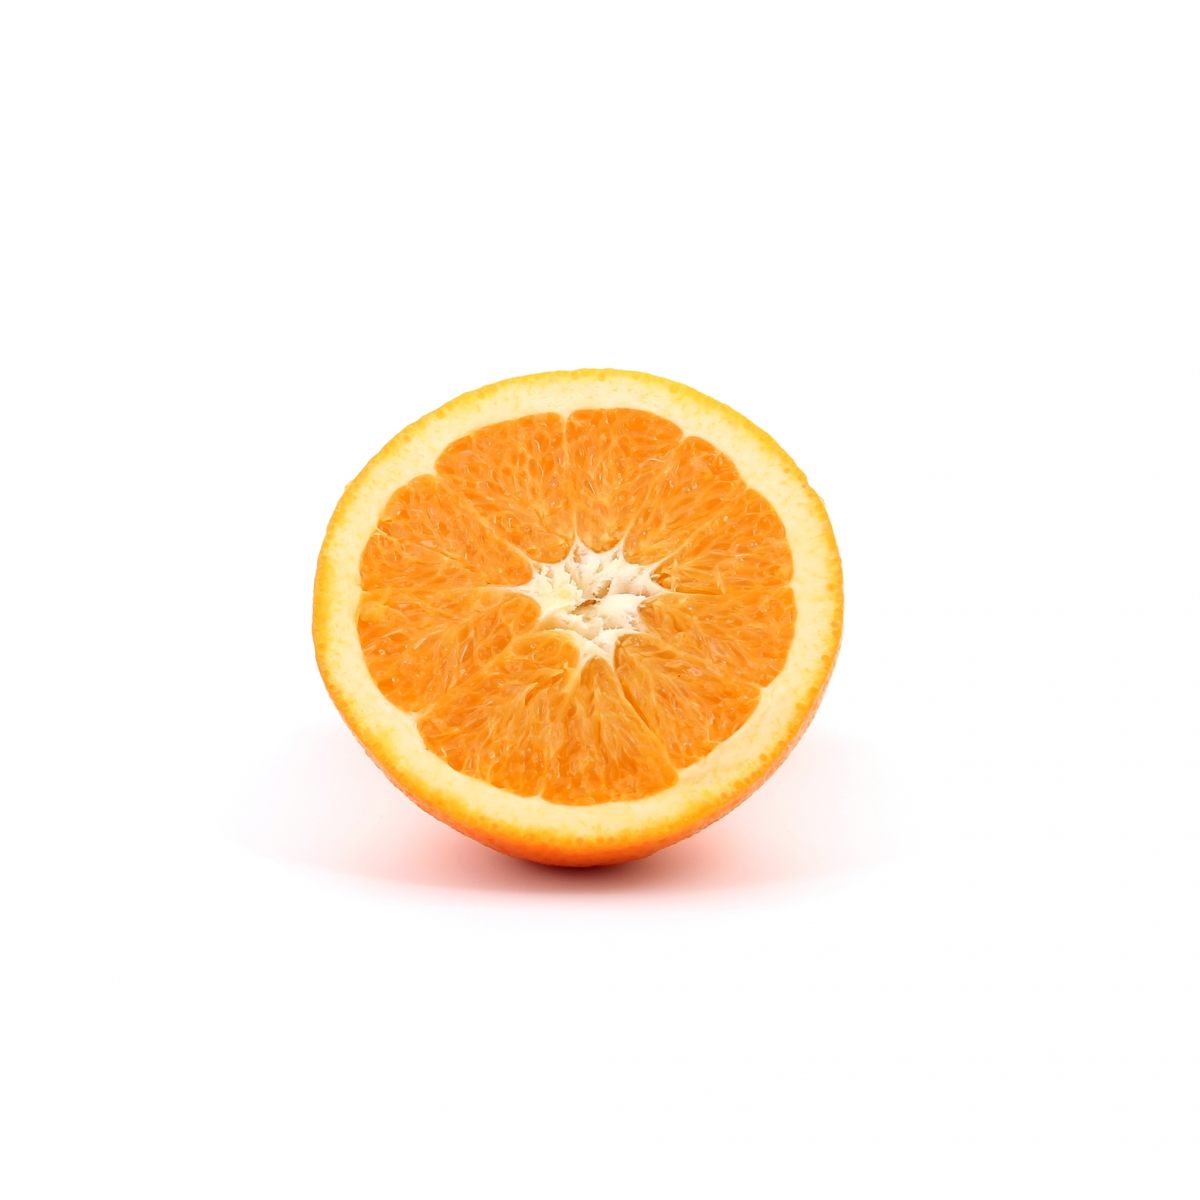 Orange (fruits)